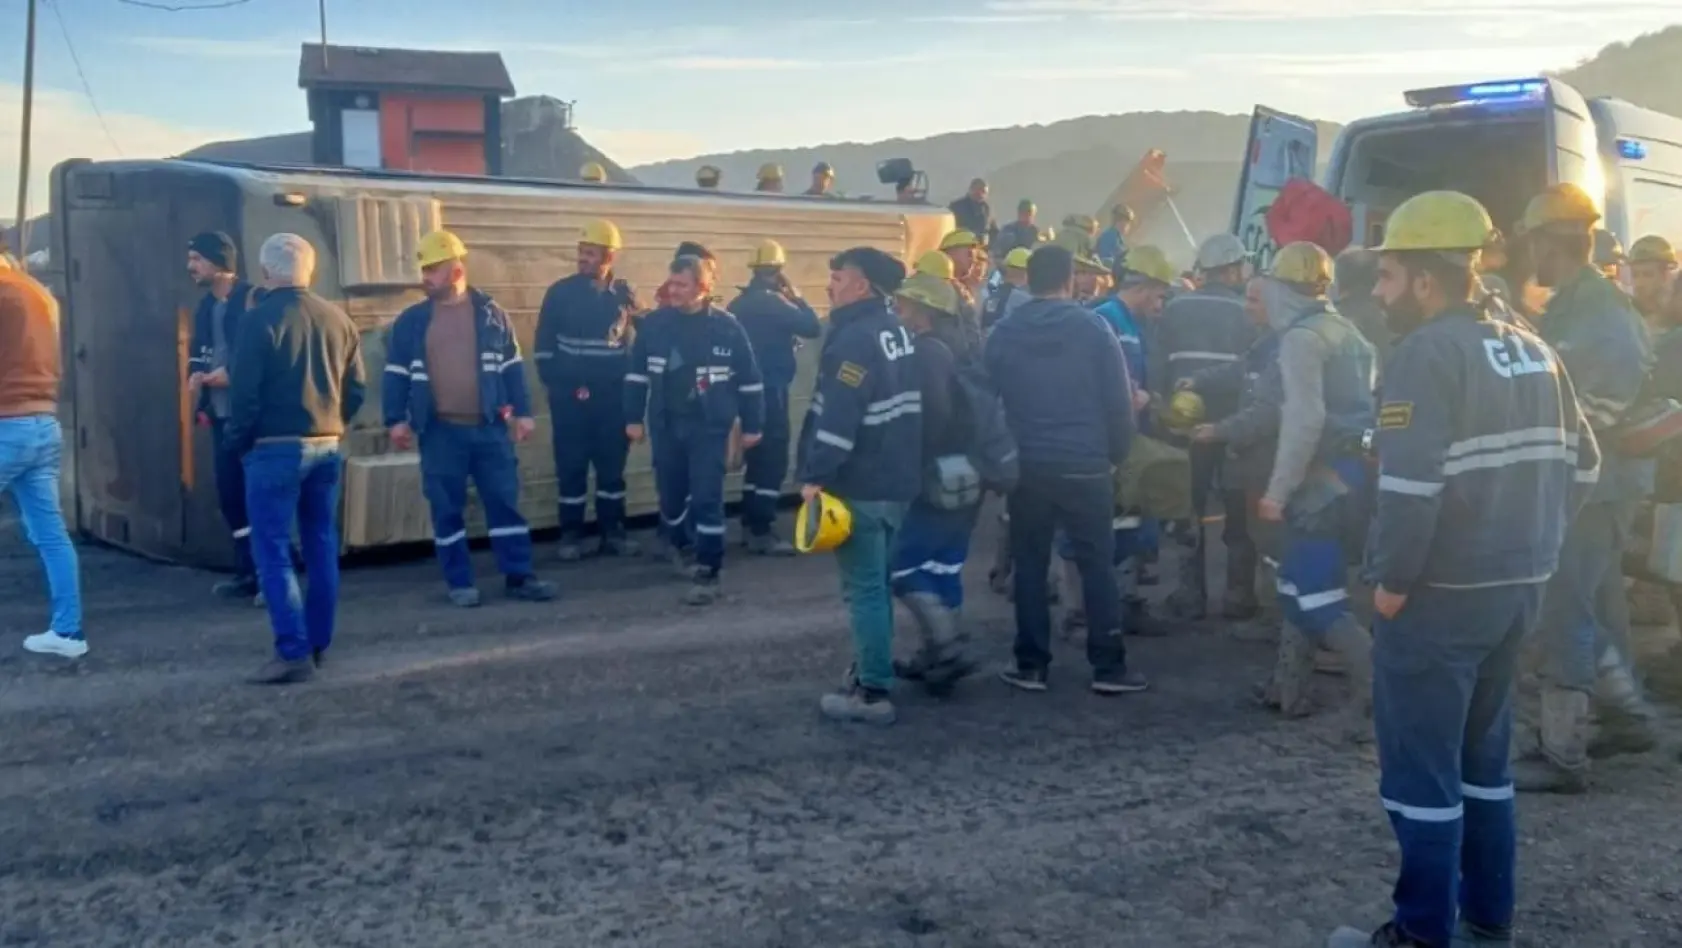 Tavşanlı'da kömür madeni işçilerini taşıyan servis devrildi: 11 yaralı